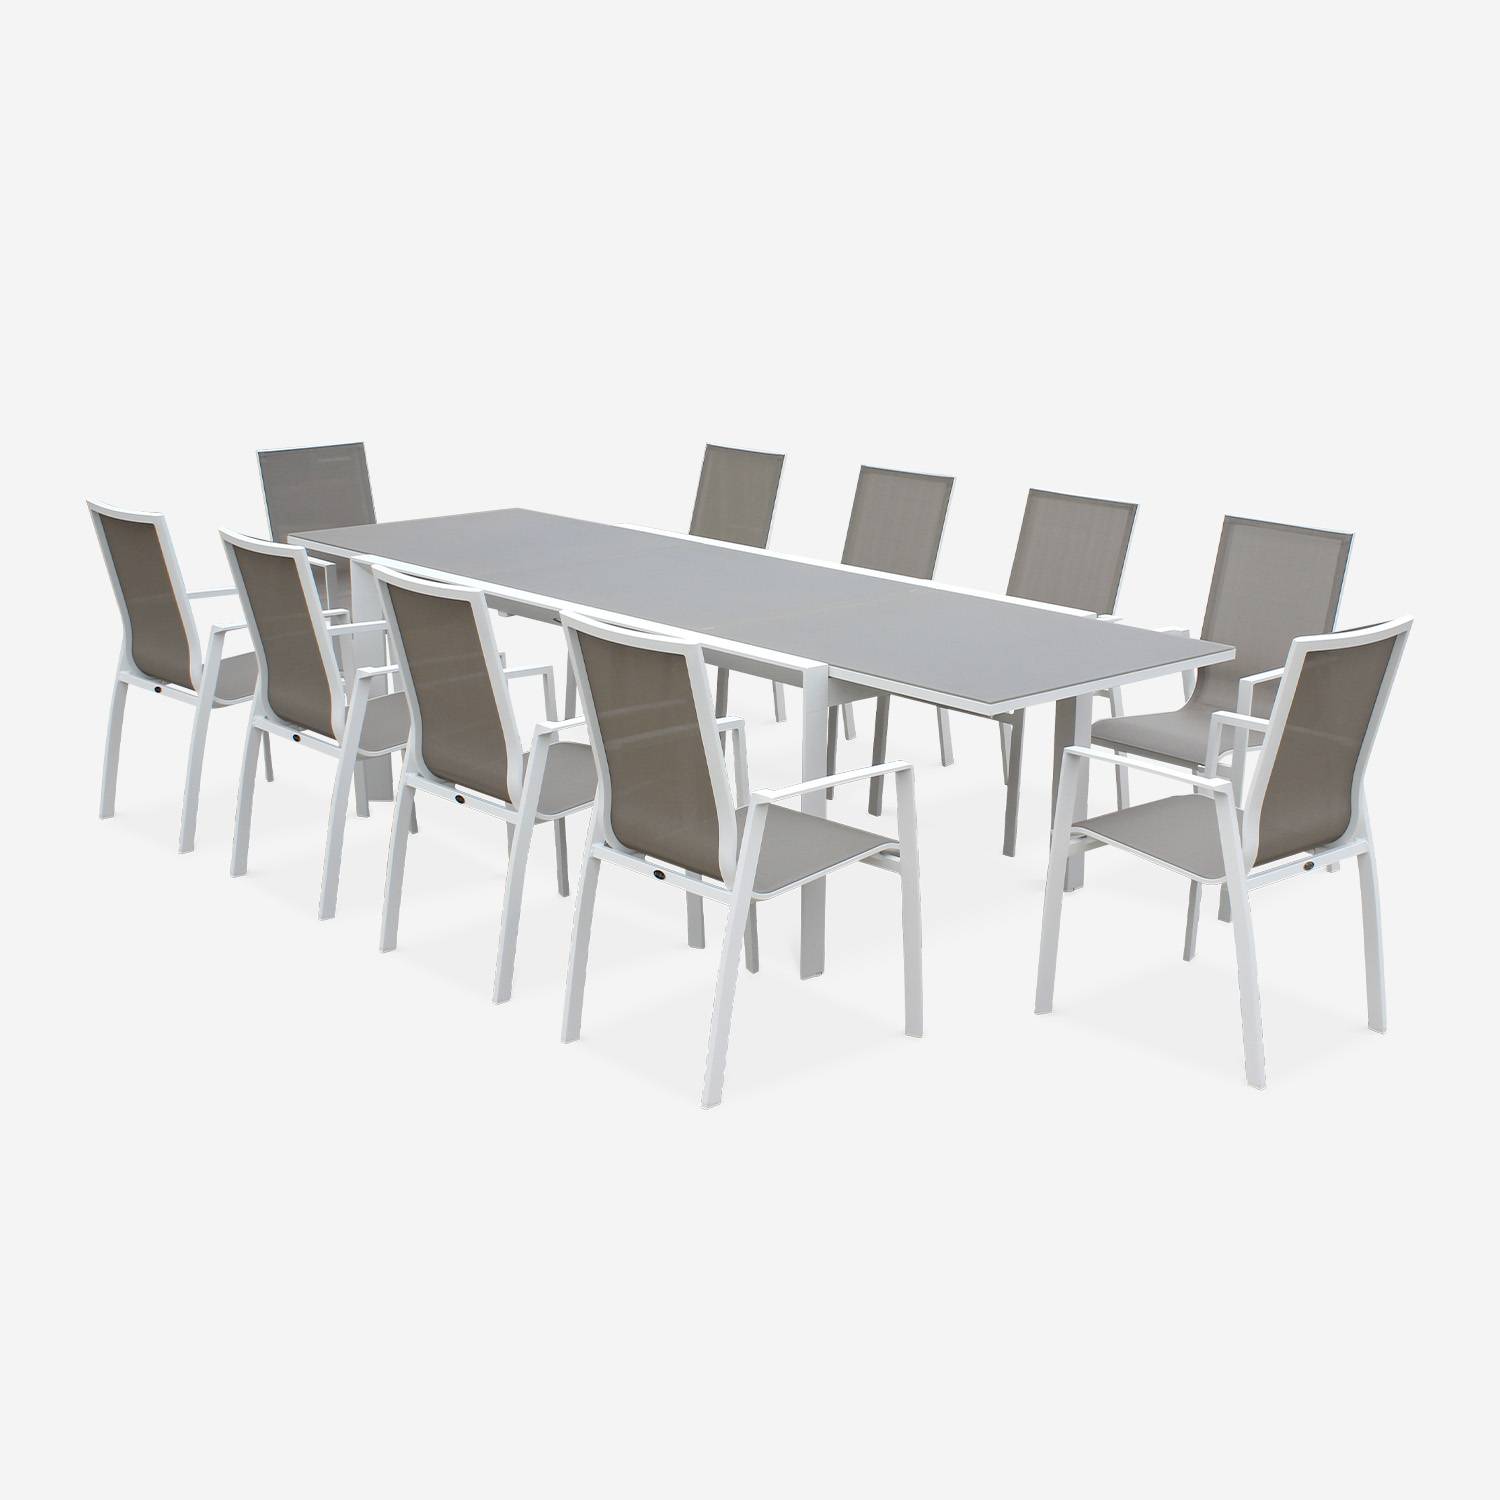 Tavolo da giardino con tavolo allungabile - modello: Washington, colore: Talpa - Tavolo in alluminio, dimensioni: 200/300cm, ripiano in vetro smerigliato, prolunga e 8 poltrone in textilene,sweeek,Photo4